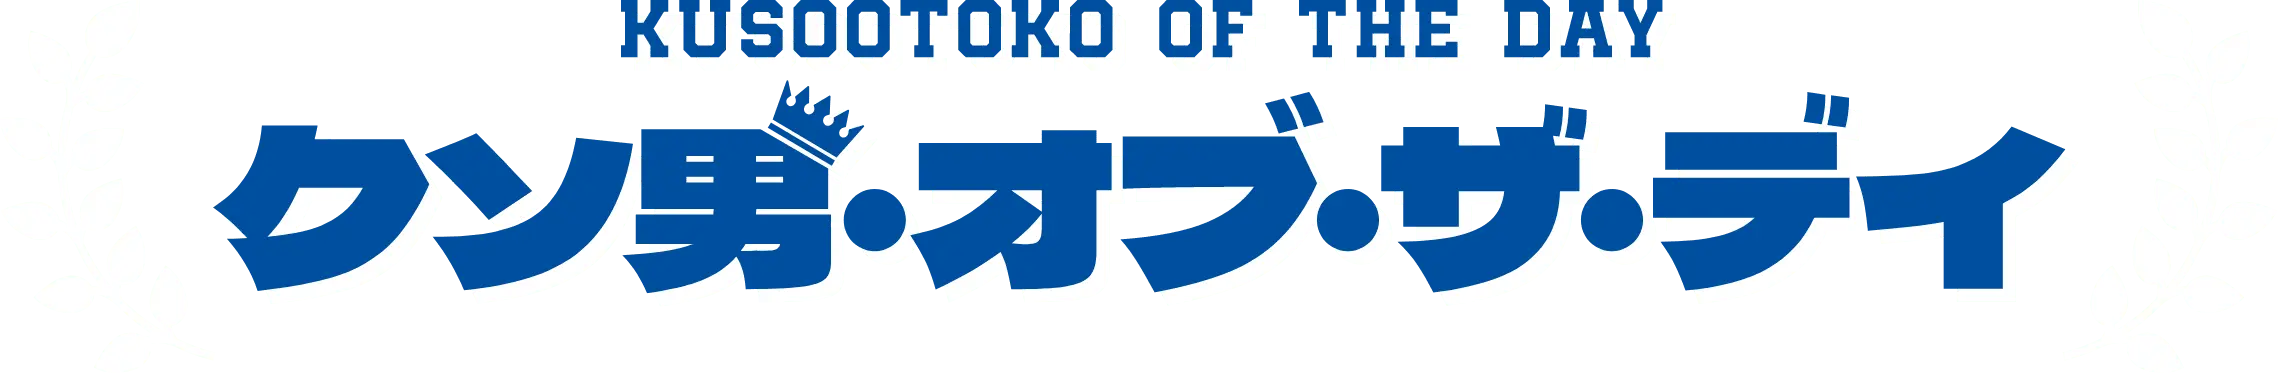 KUSOOTOKO OF THE DAY クソ男・オブ・ザ・ディ